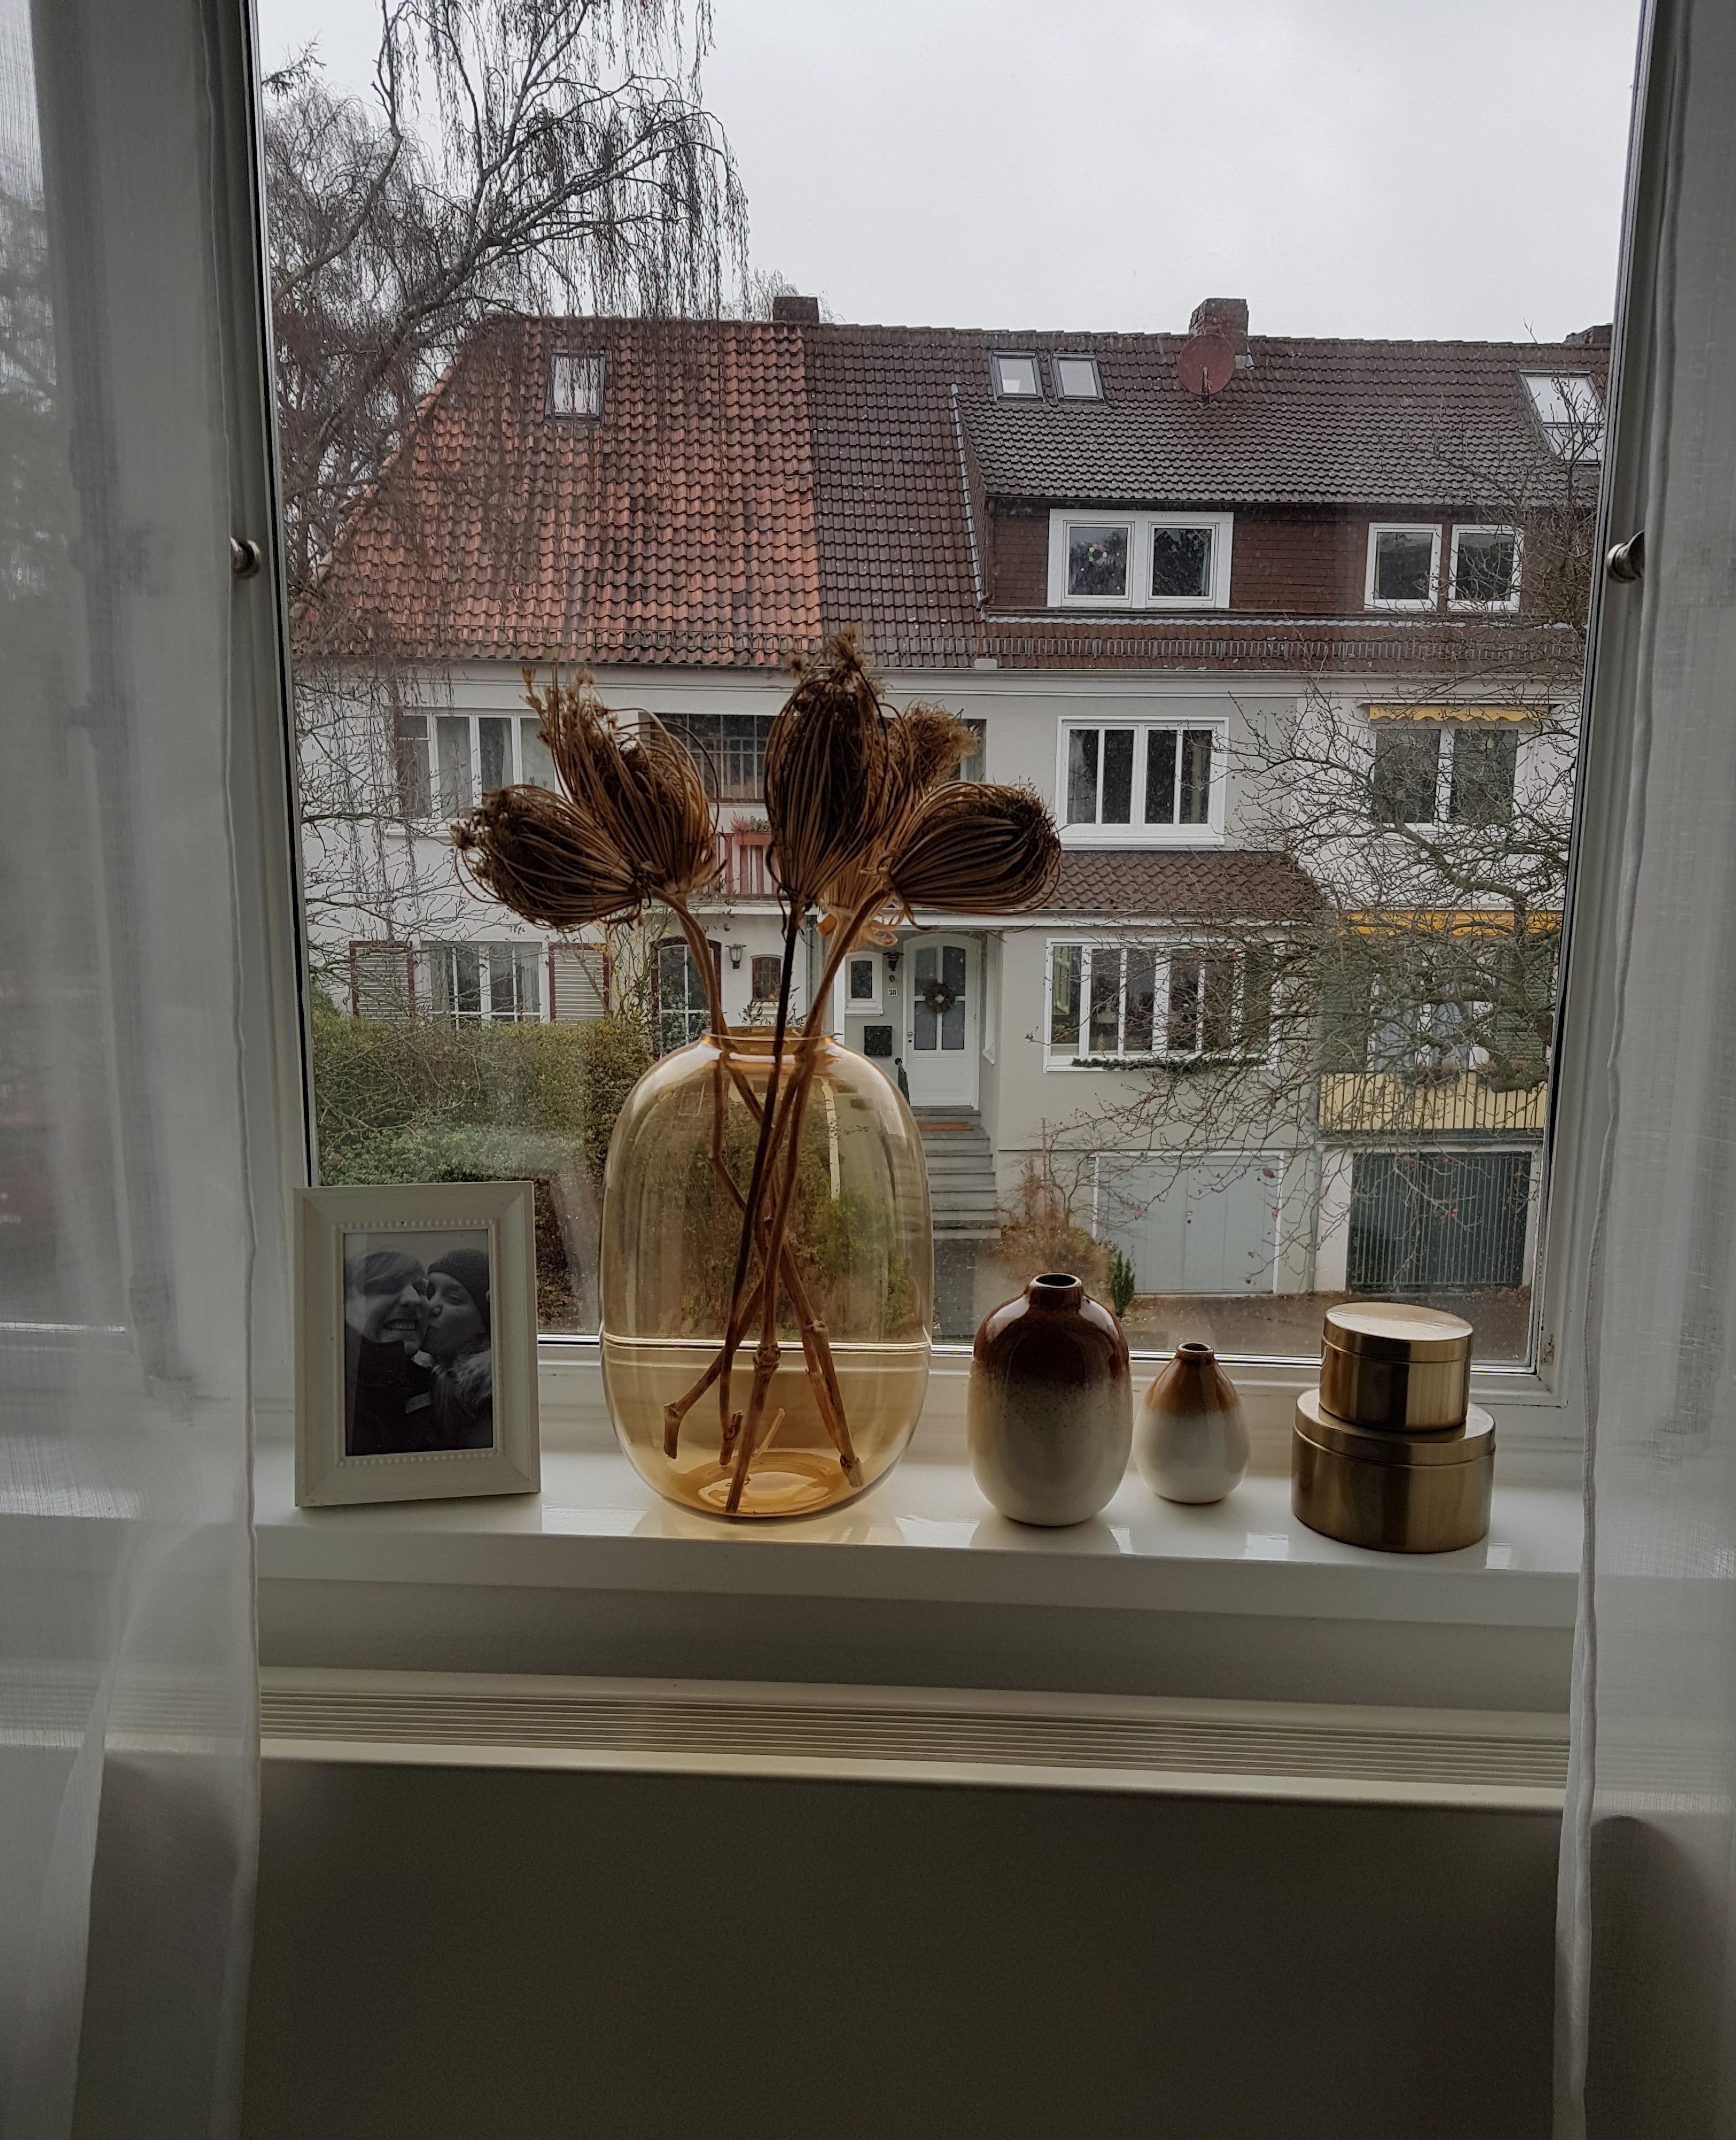 Meine neue Vasen , eine große Liebe 😊 #altbau #vasen 